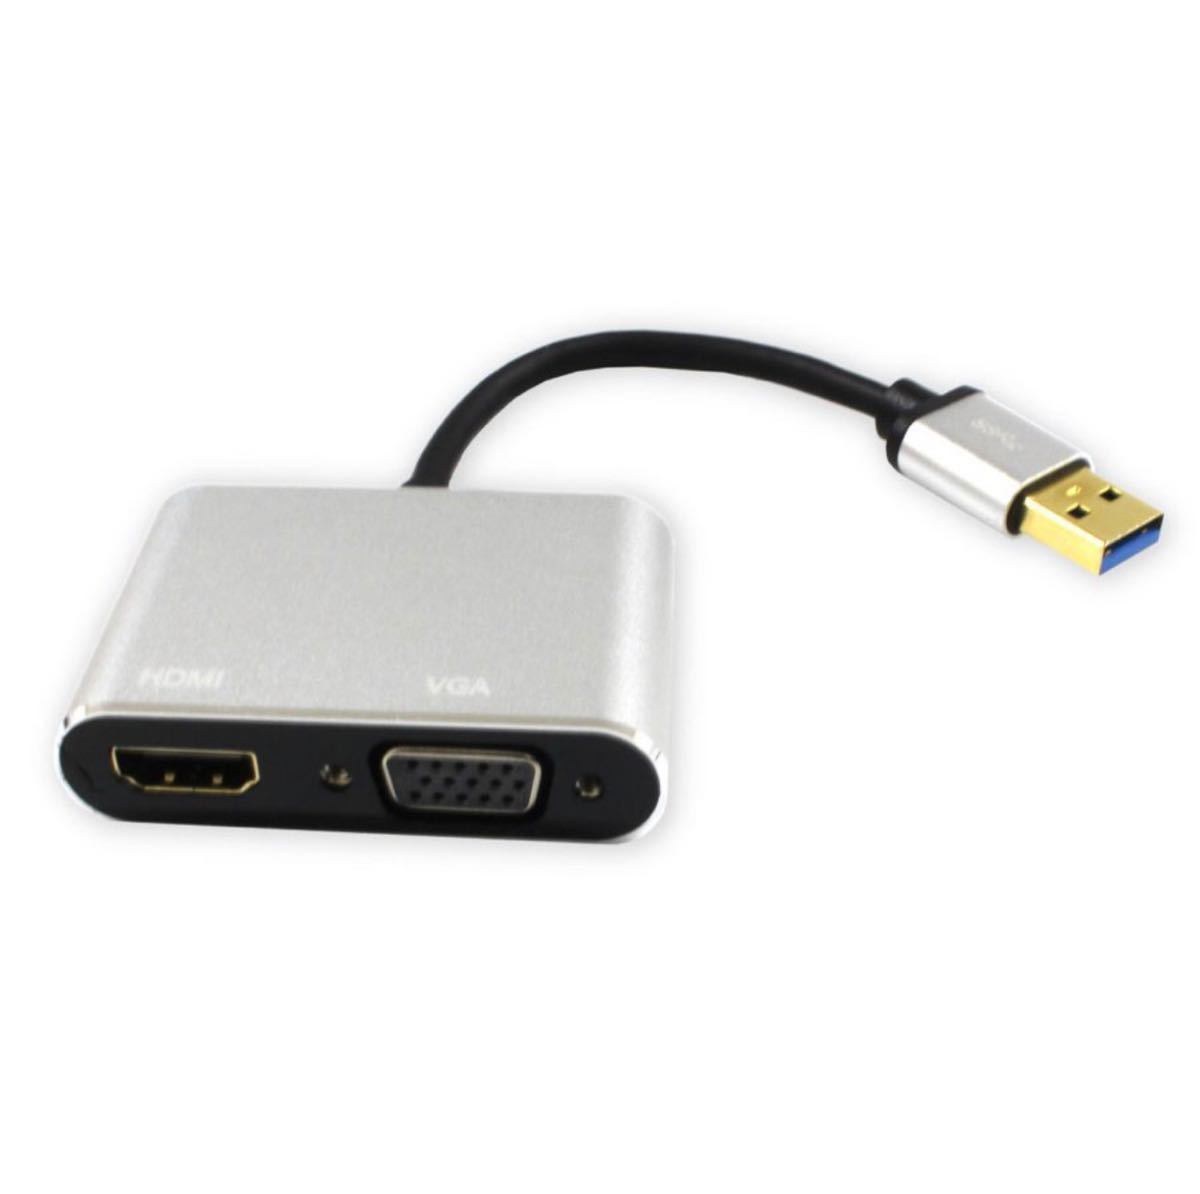 変換アダプター USB3.0 to HDMI/VGA パソコン ケーブル PC プロジェクター テレビ モニター XP 対応